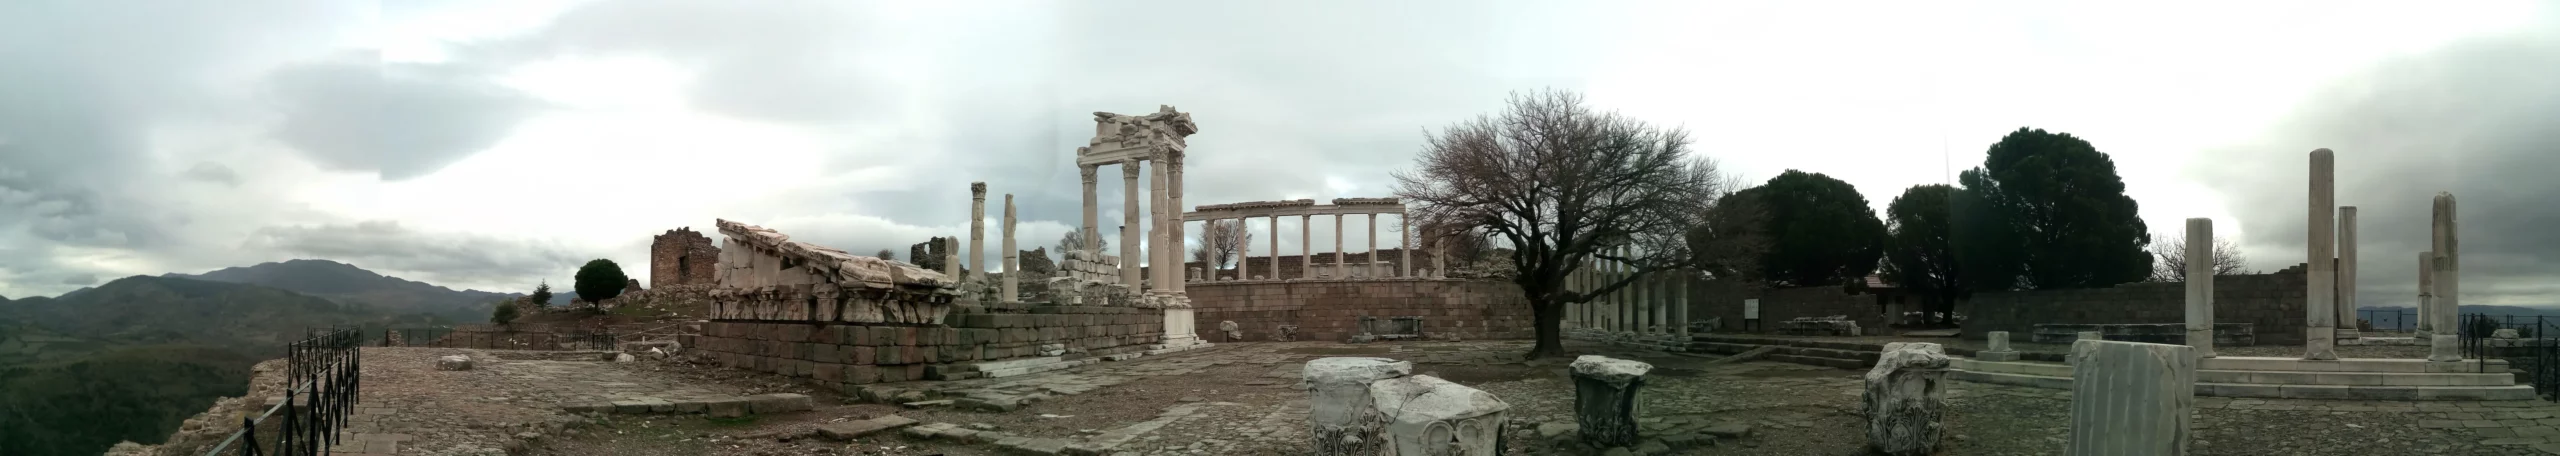 Pergamon 4